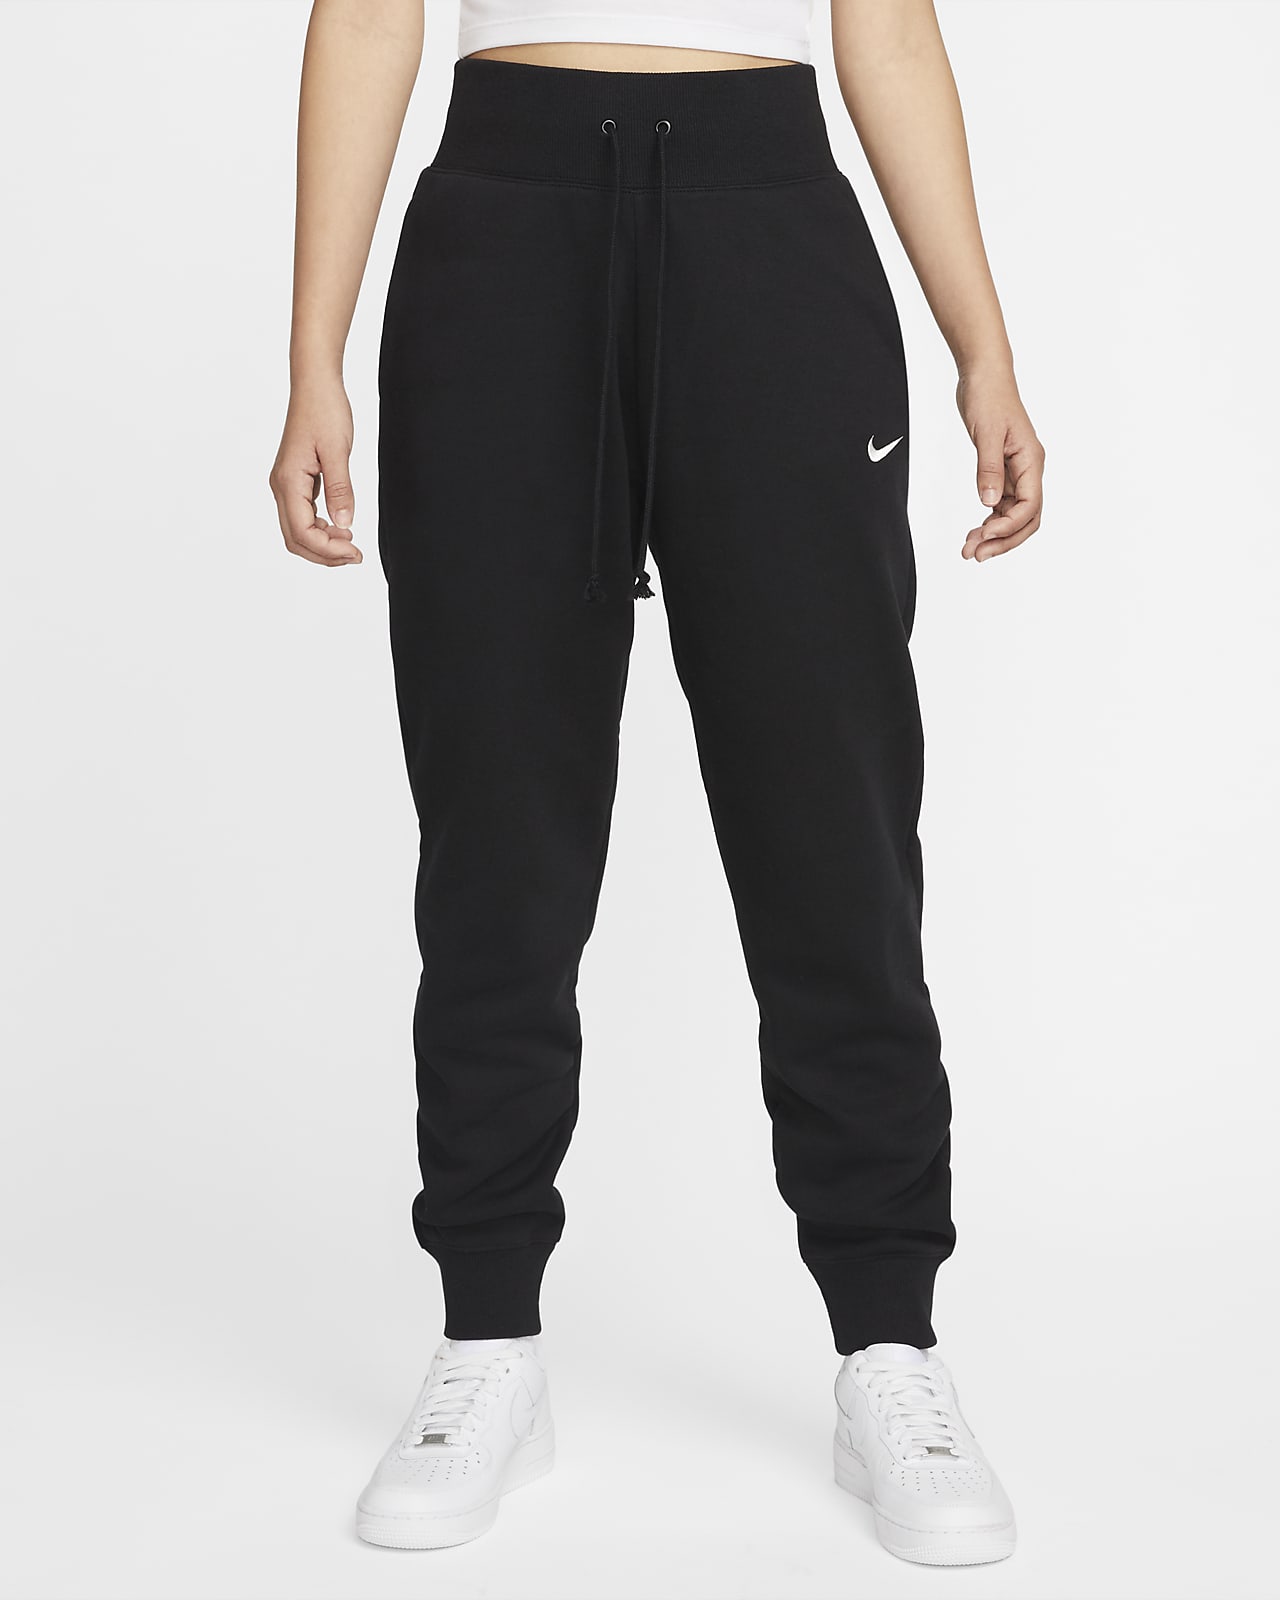 Maak een naam negatief Pelagisch Nike Sportswear Phoenix Fleece Joggingbroek met hoge taille voor dames. Nike  NL